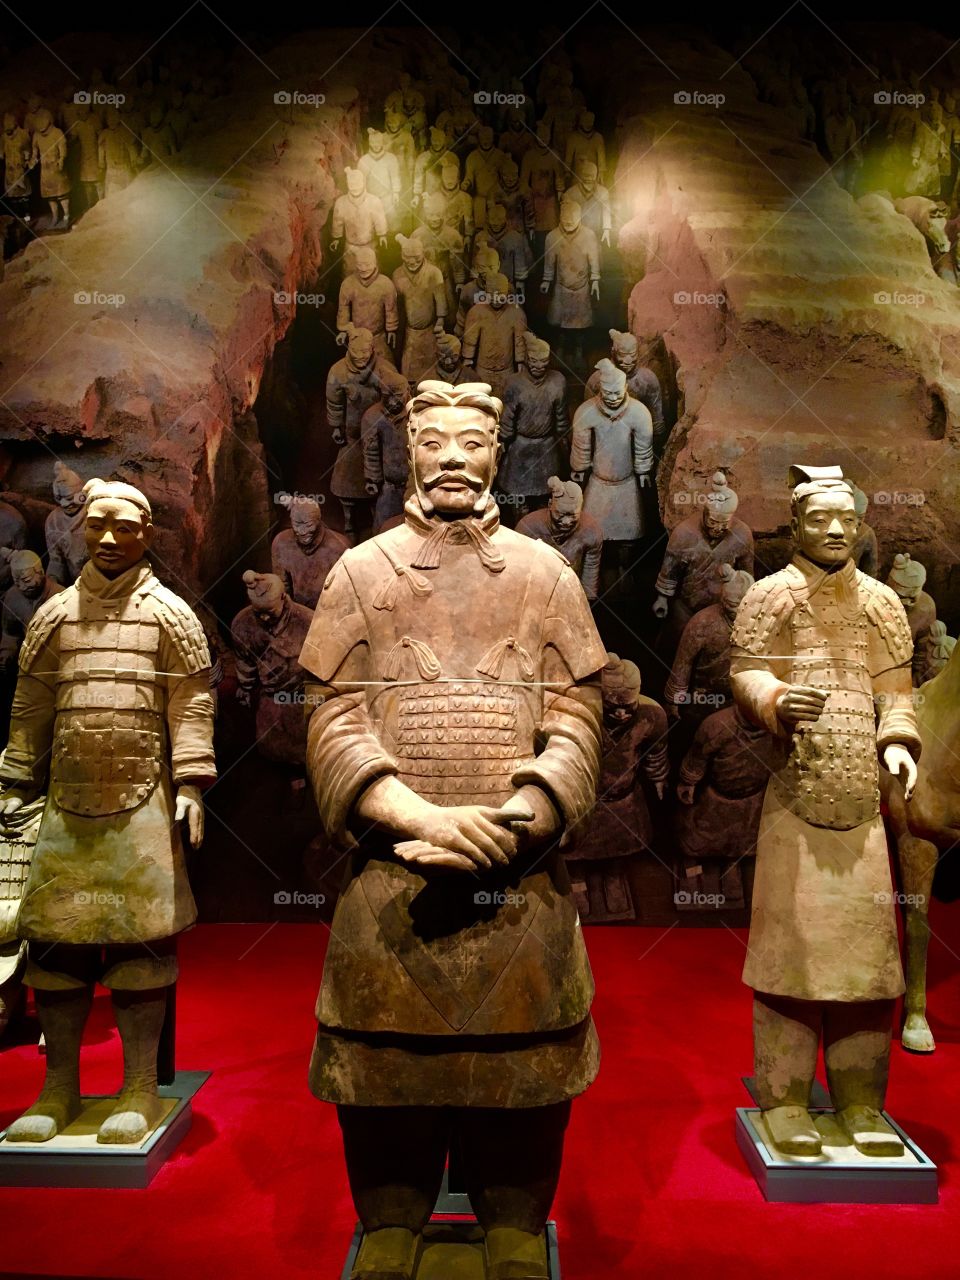 Chinese warriors. 